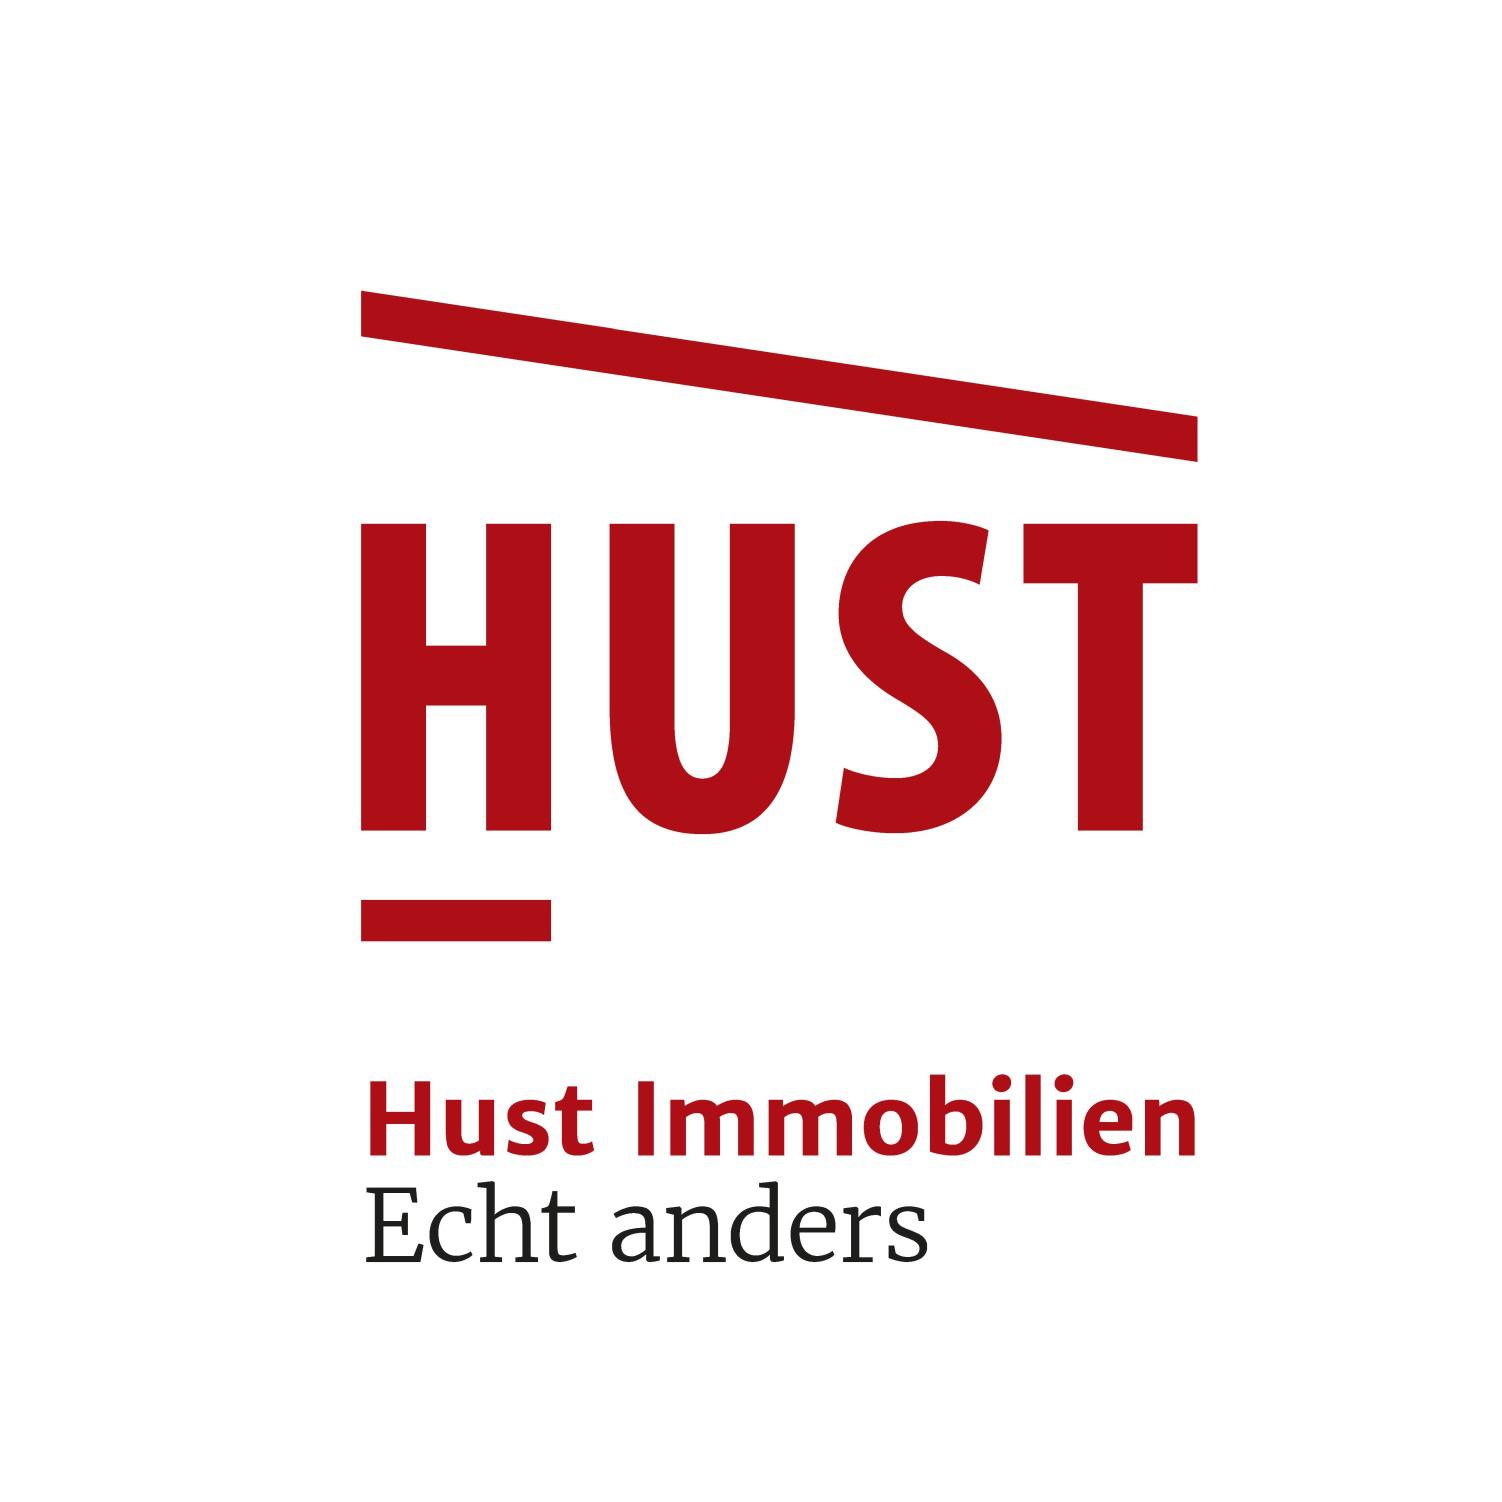 HUST Immobilien GmbH & Co. KG I Karlsruhe-Durlach - HUST Immobilien Karlsruhe zeichnet sich durch sein 18-köpfiges Team aus. Jeder einzelne greift auf fundiertes Fachwissen zurück, bietet umfangreiche Qualifikationen und hat überdurchschnittliche soziale 